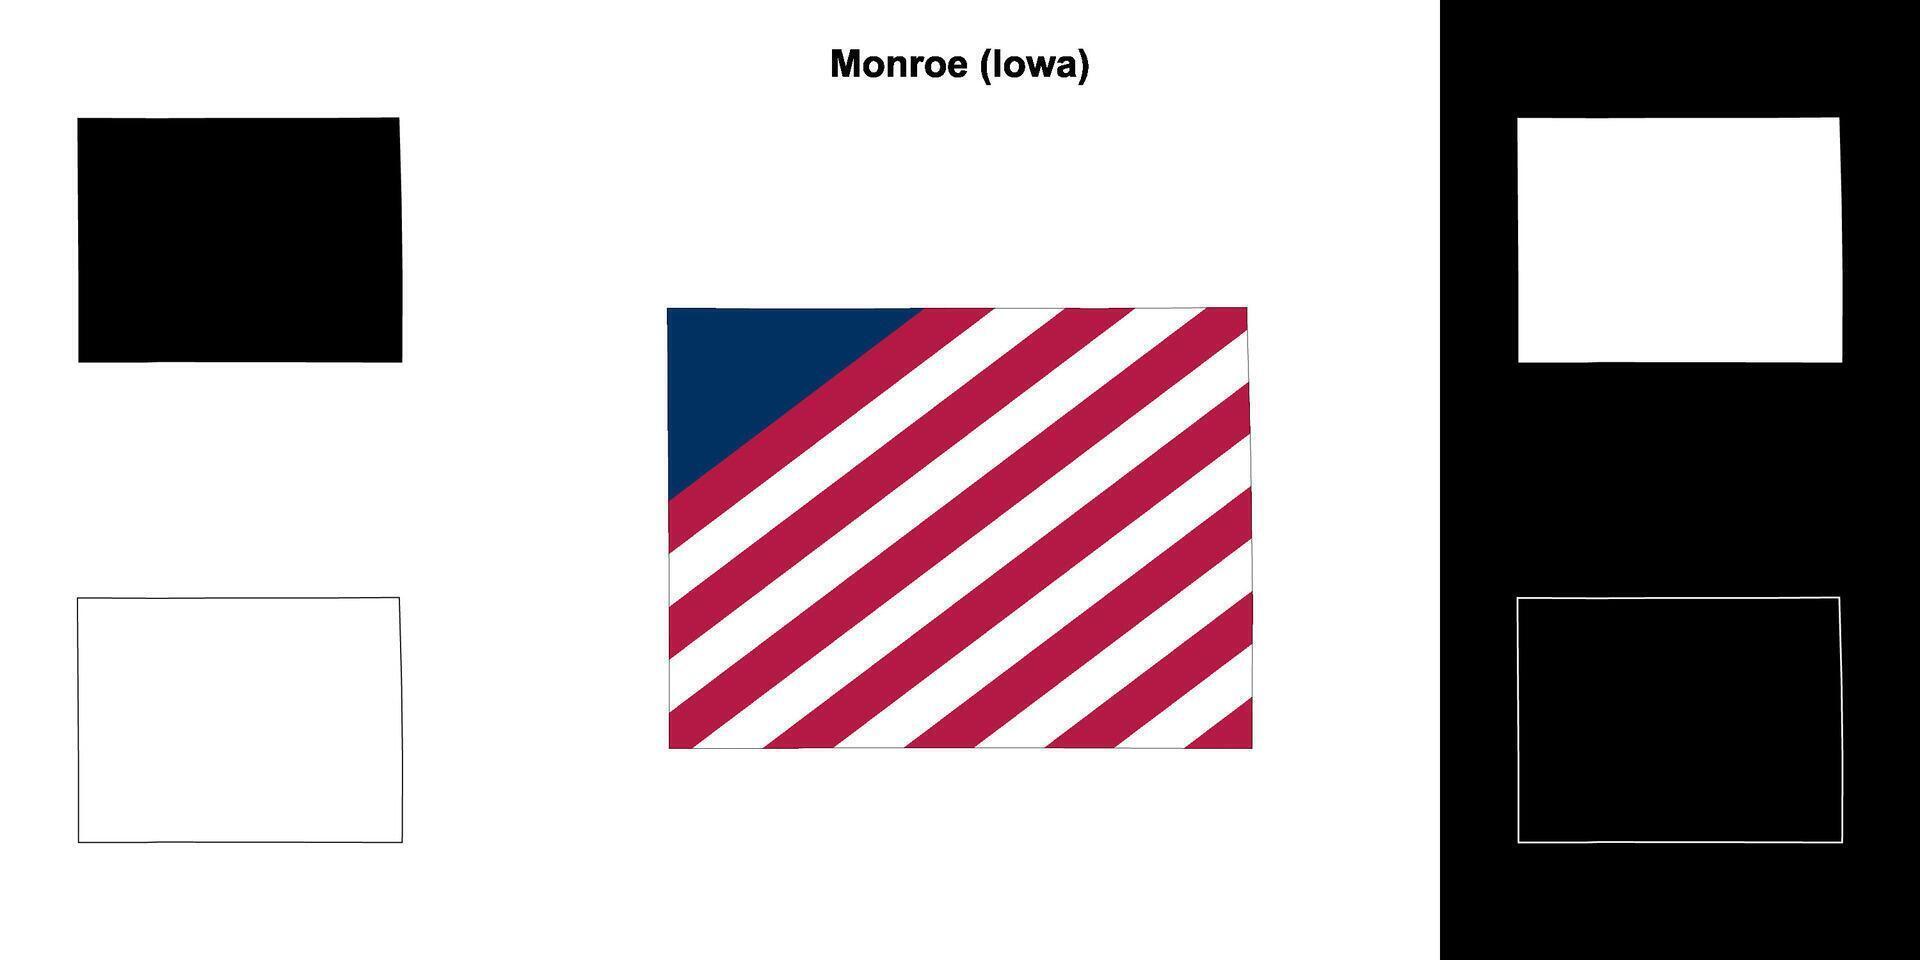 Monroe condado, iowa esboço mapa conjunto vetor